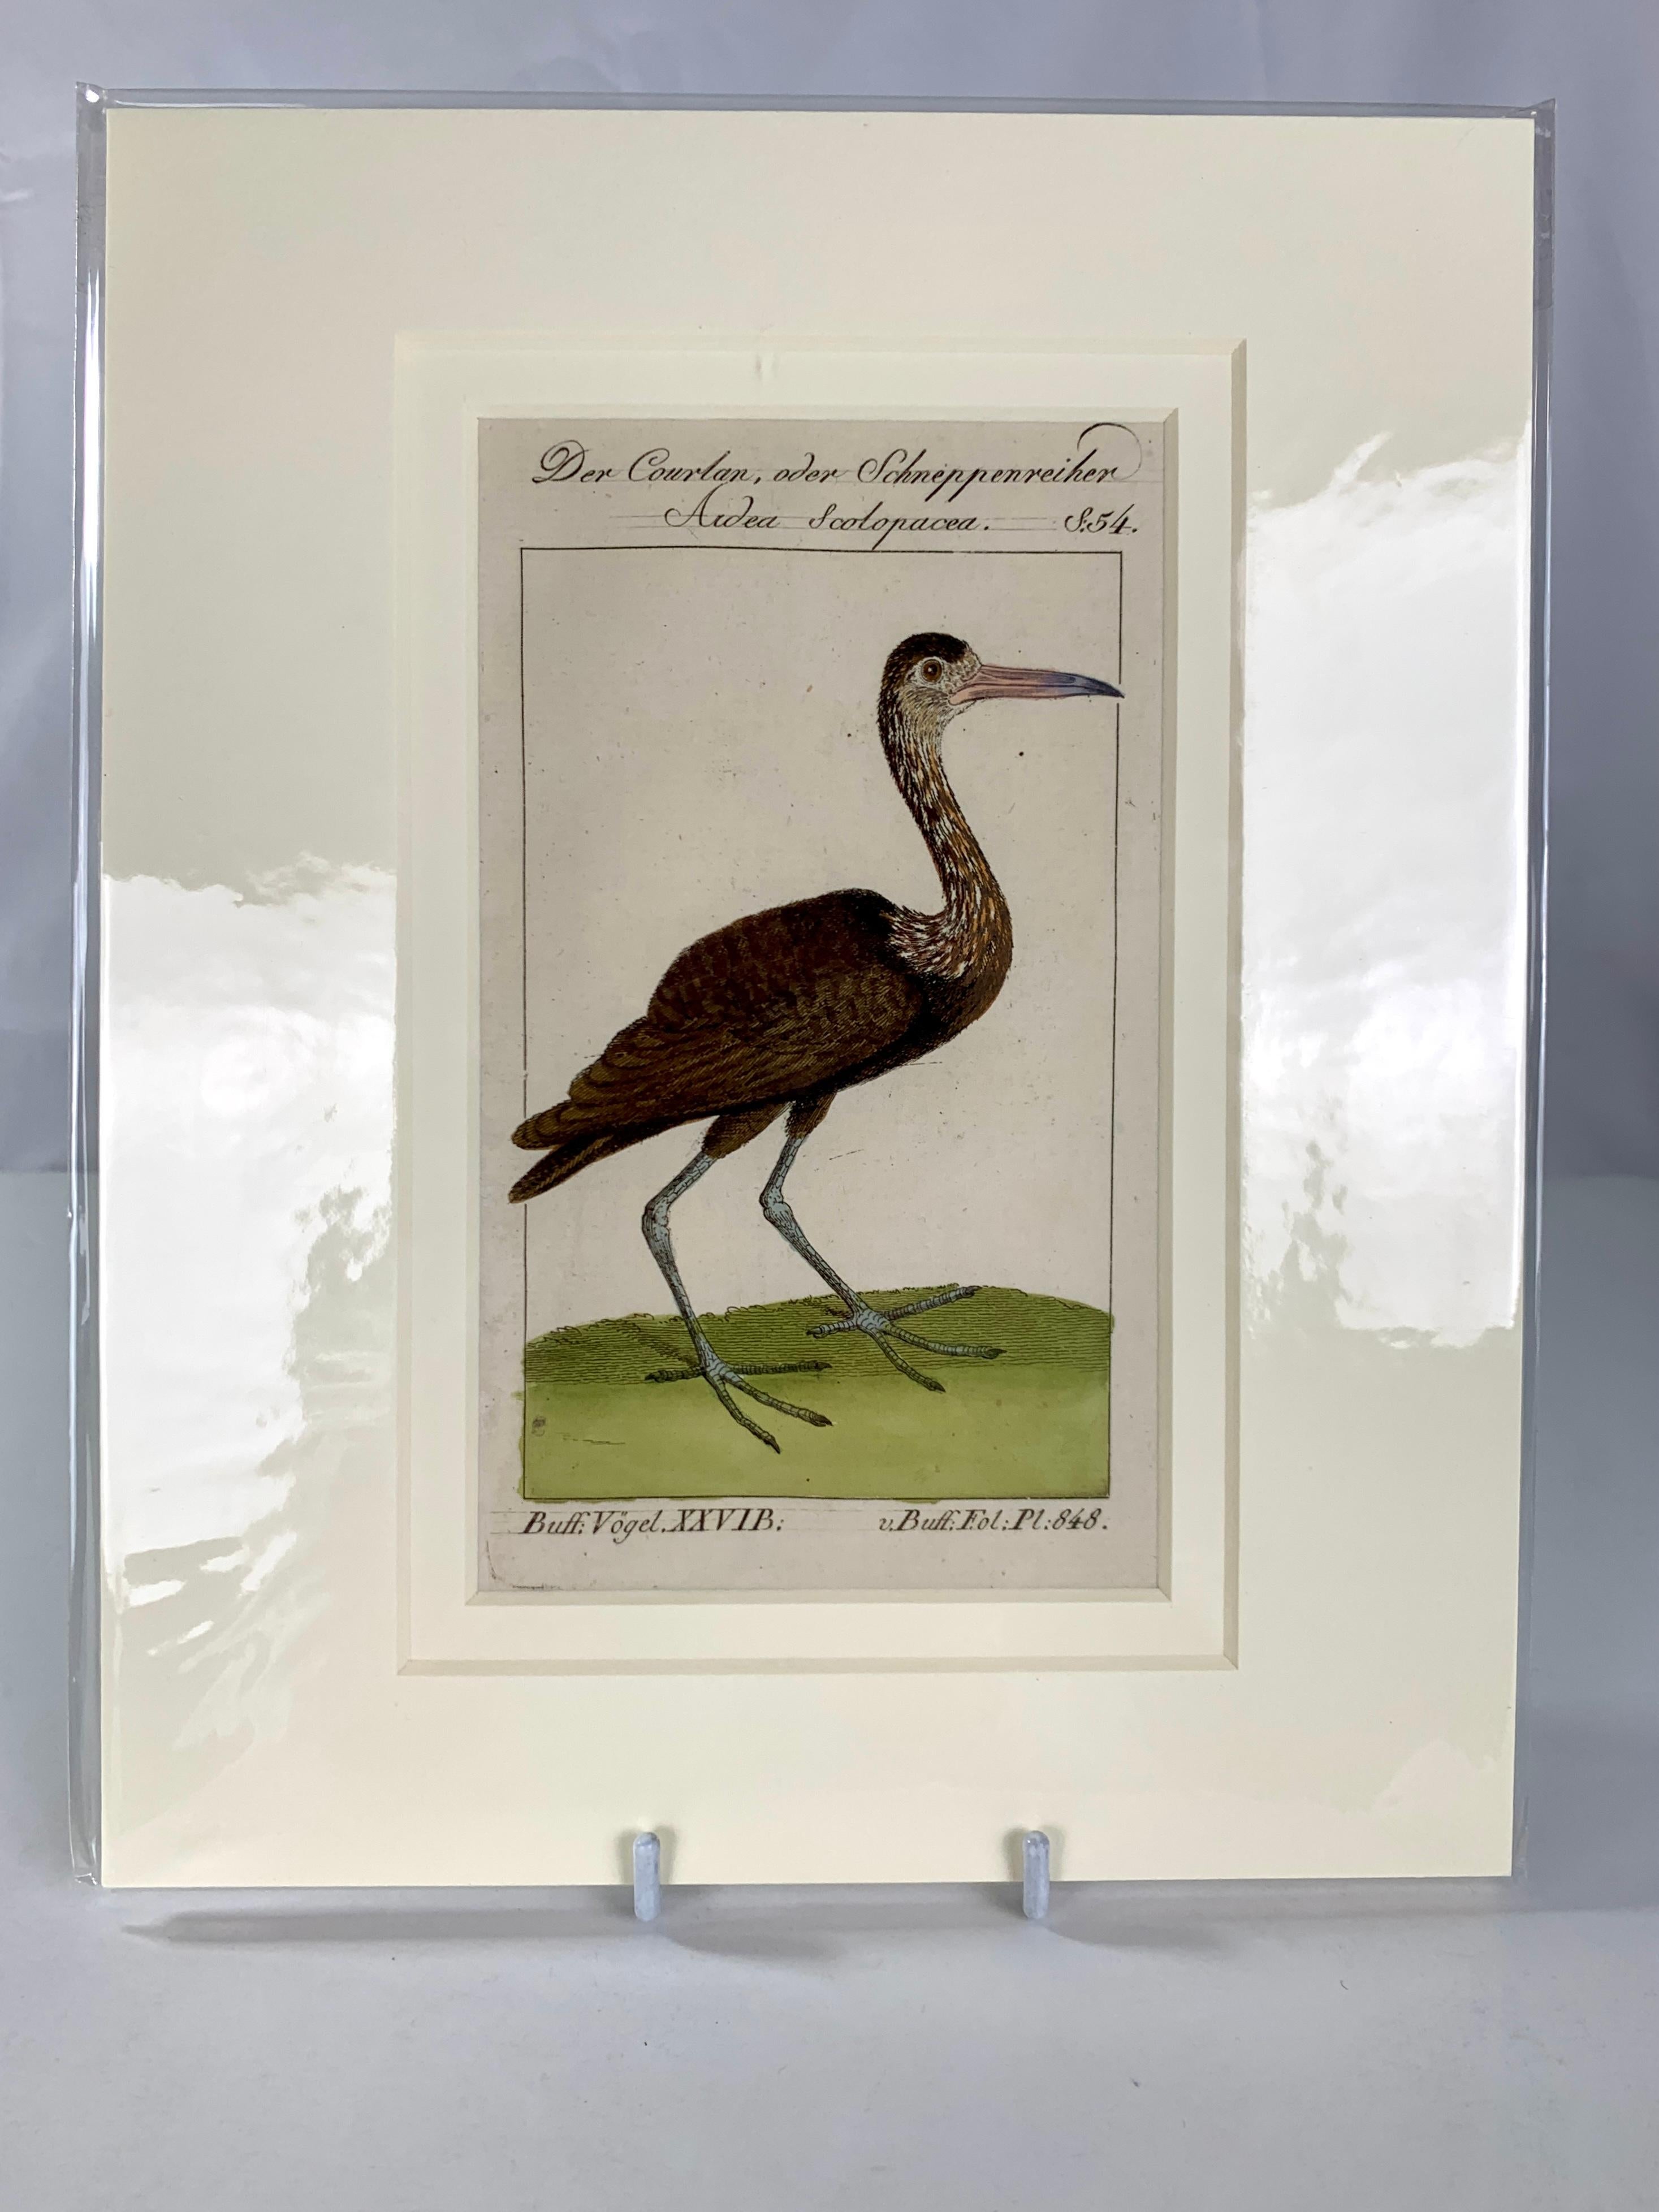 Il s'agit de gravures sur cuivre magnifiquement dessinées et détaillées, tirées de l'un des ouvrages ornithologiques les plus importants du XVIIIe siècle.  Il s'agit de rares et fascinantes gravures coloriées à la main, imprimées sur du papier